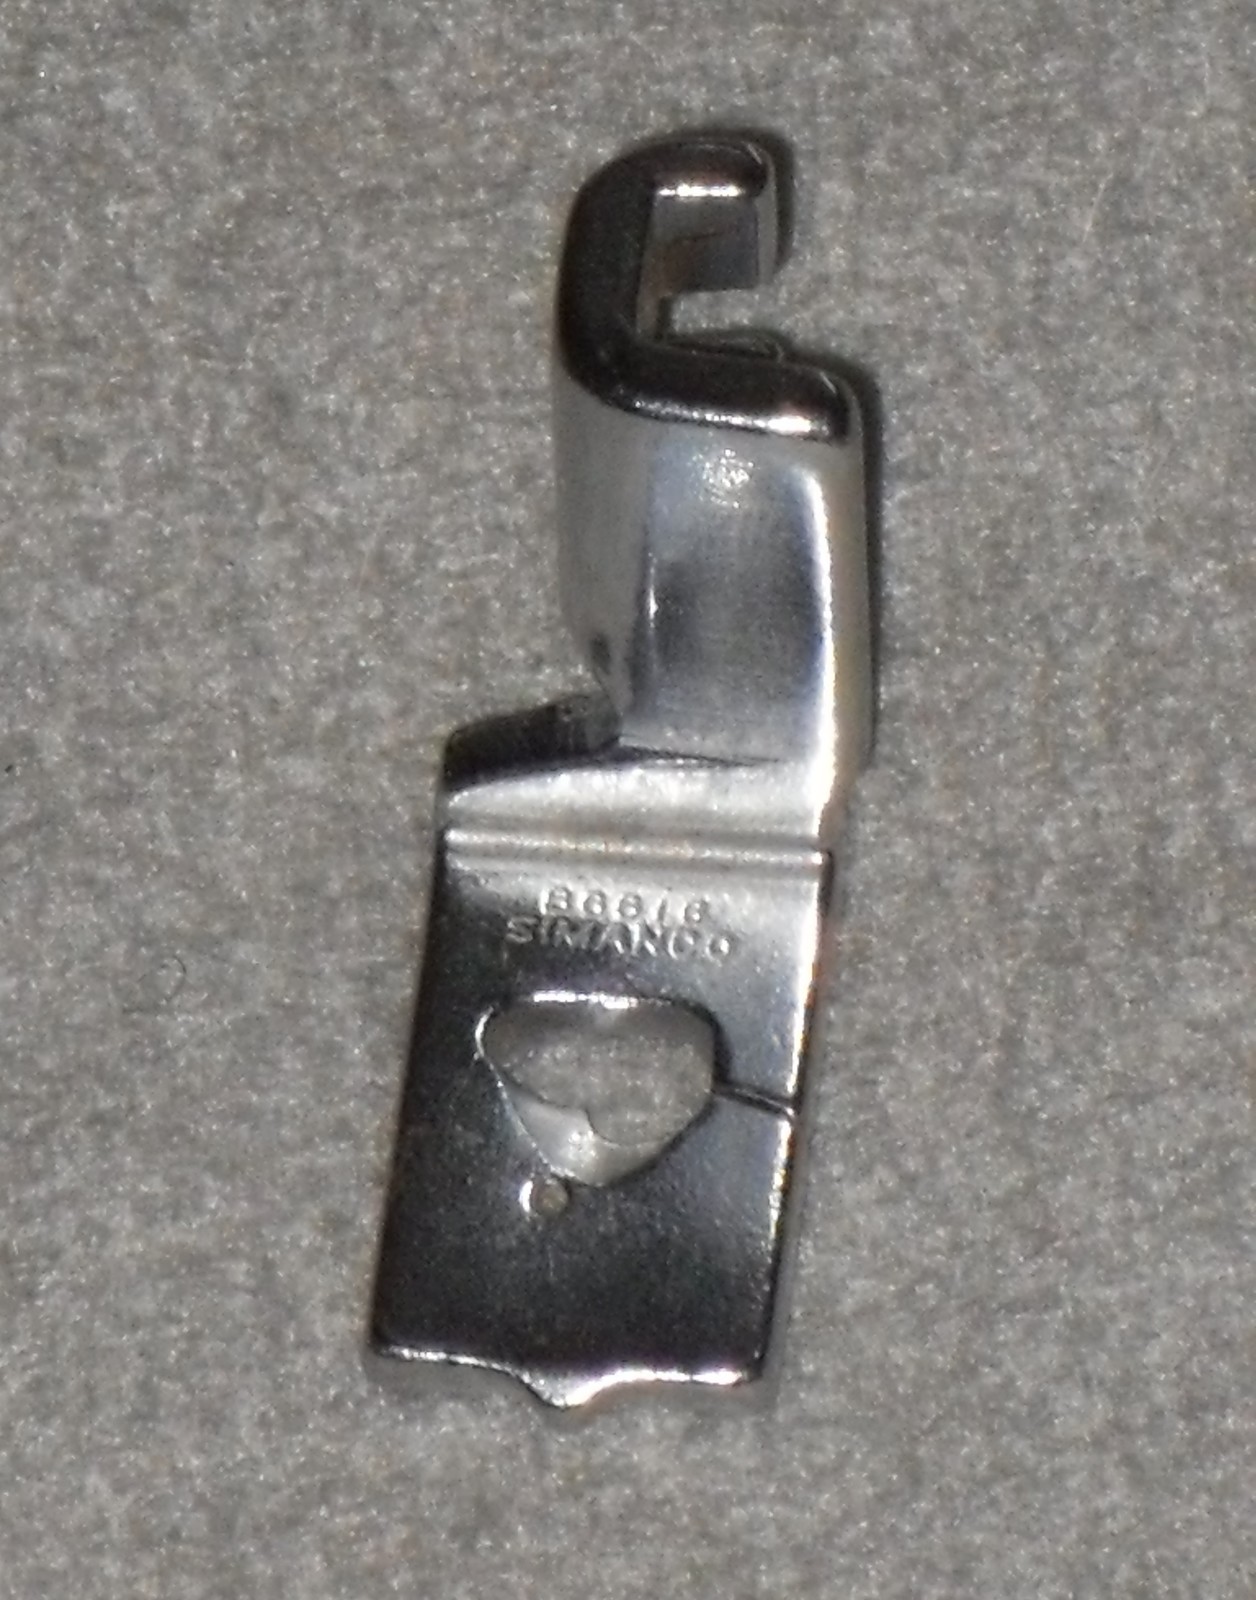 Vintage Singer Low Shank Buttonhole Presser Foot Attachment Simanco #86616 - $9.95